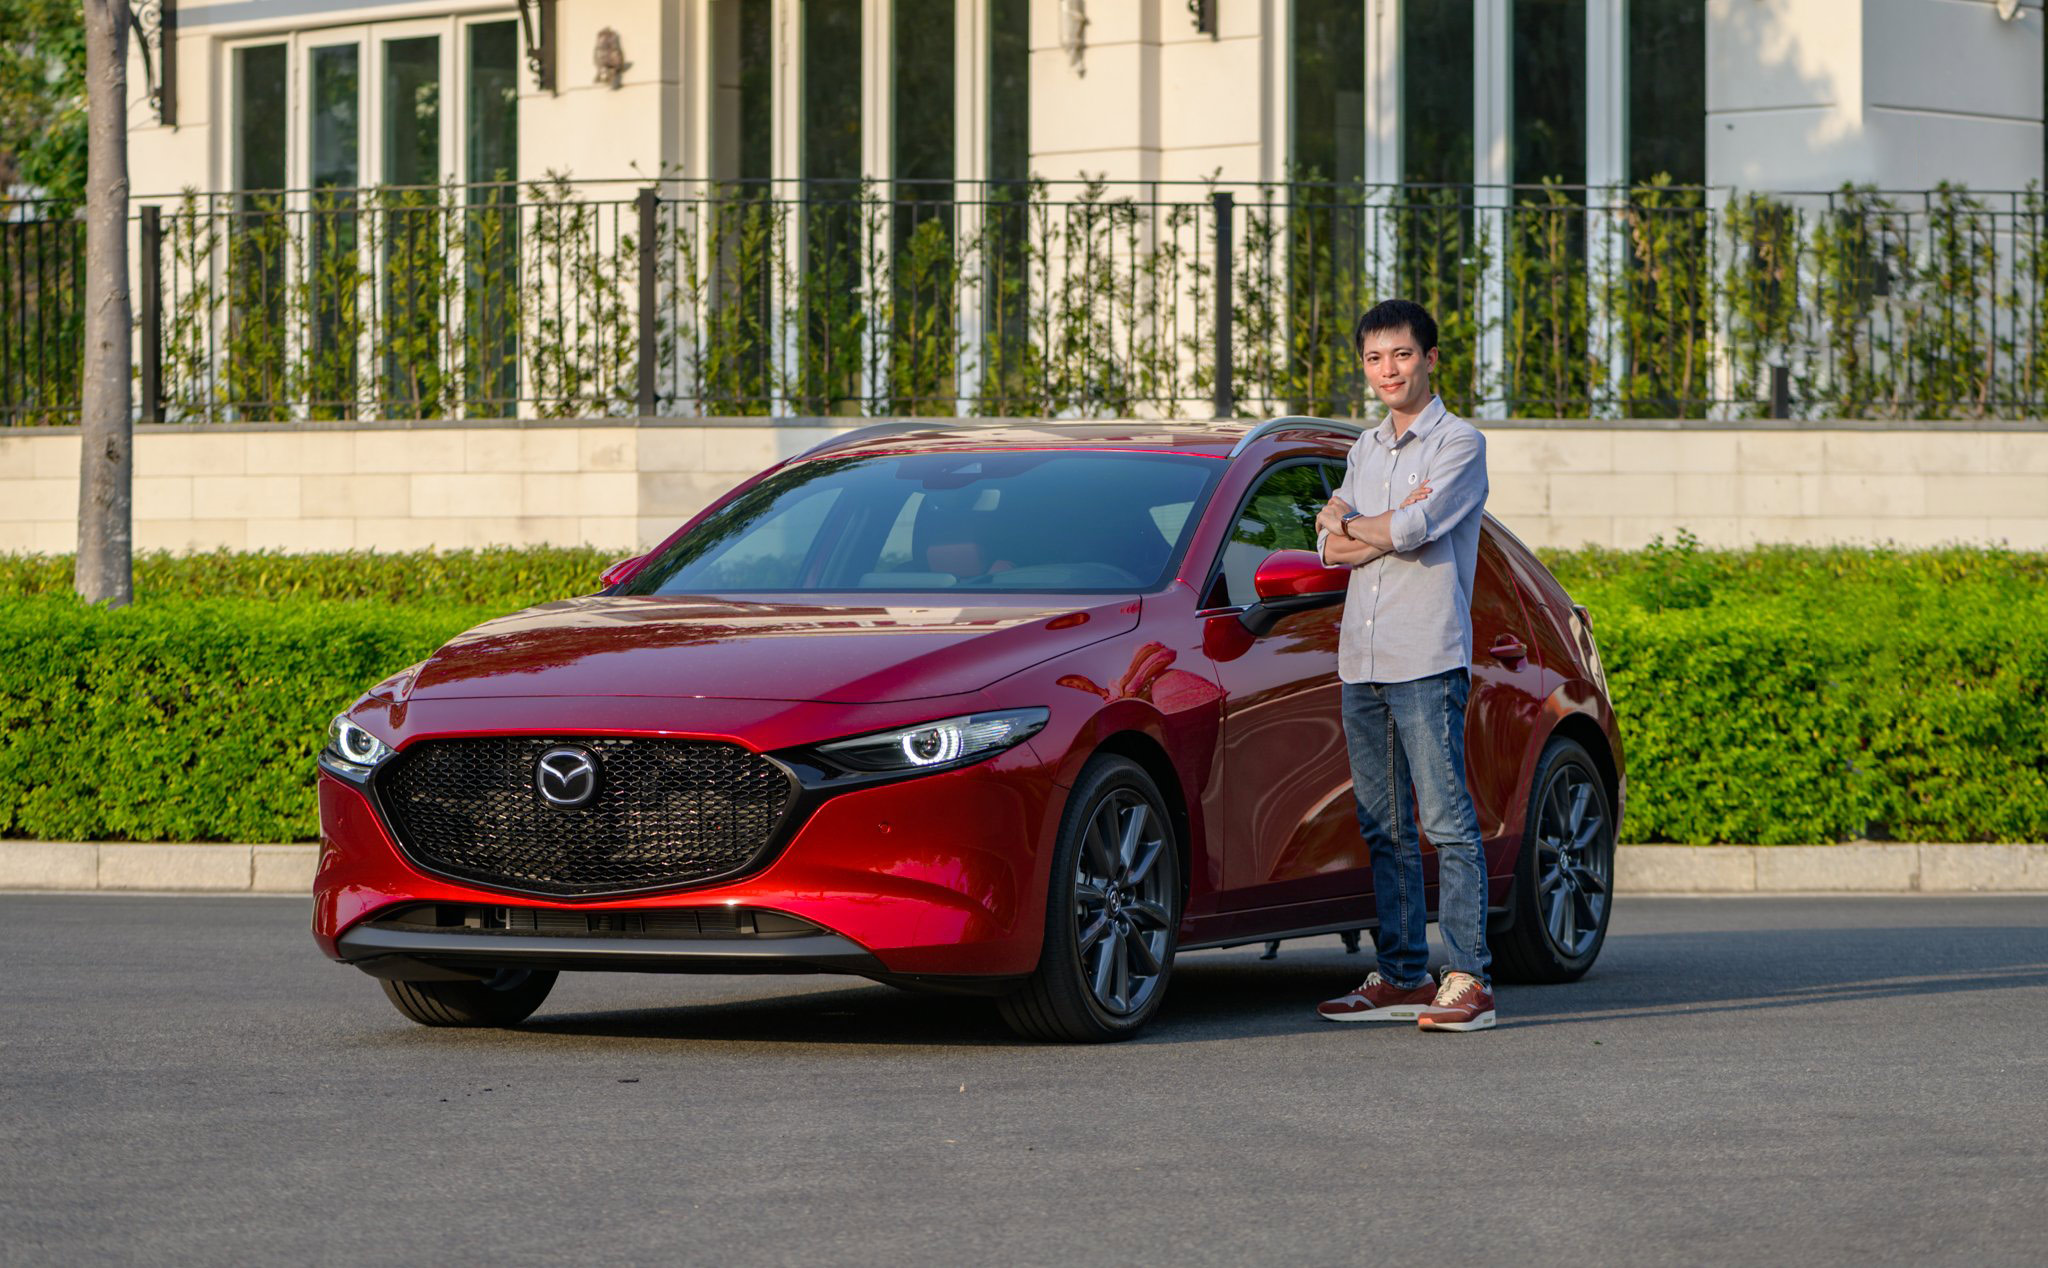 Trên tay Mazda 3 Sport 2019-2020: Phong cách thể thao, cá tính và hiện đại